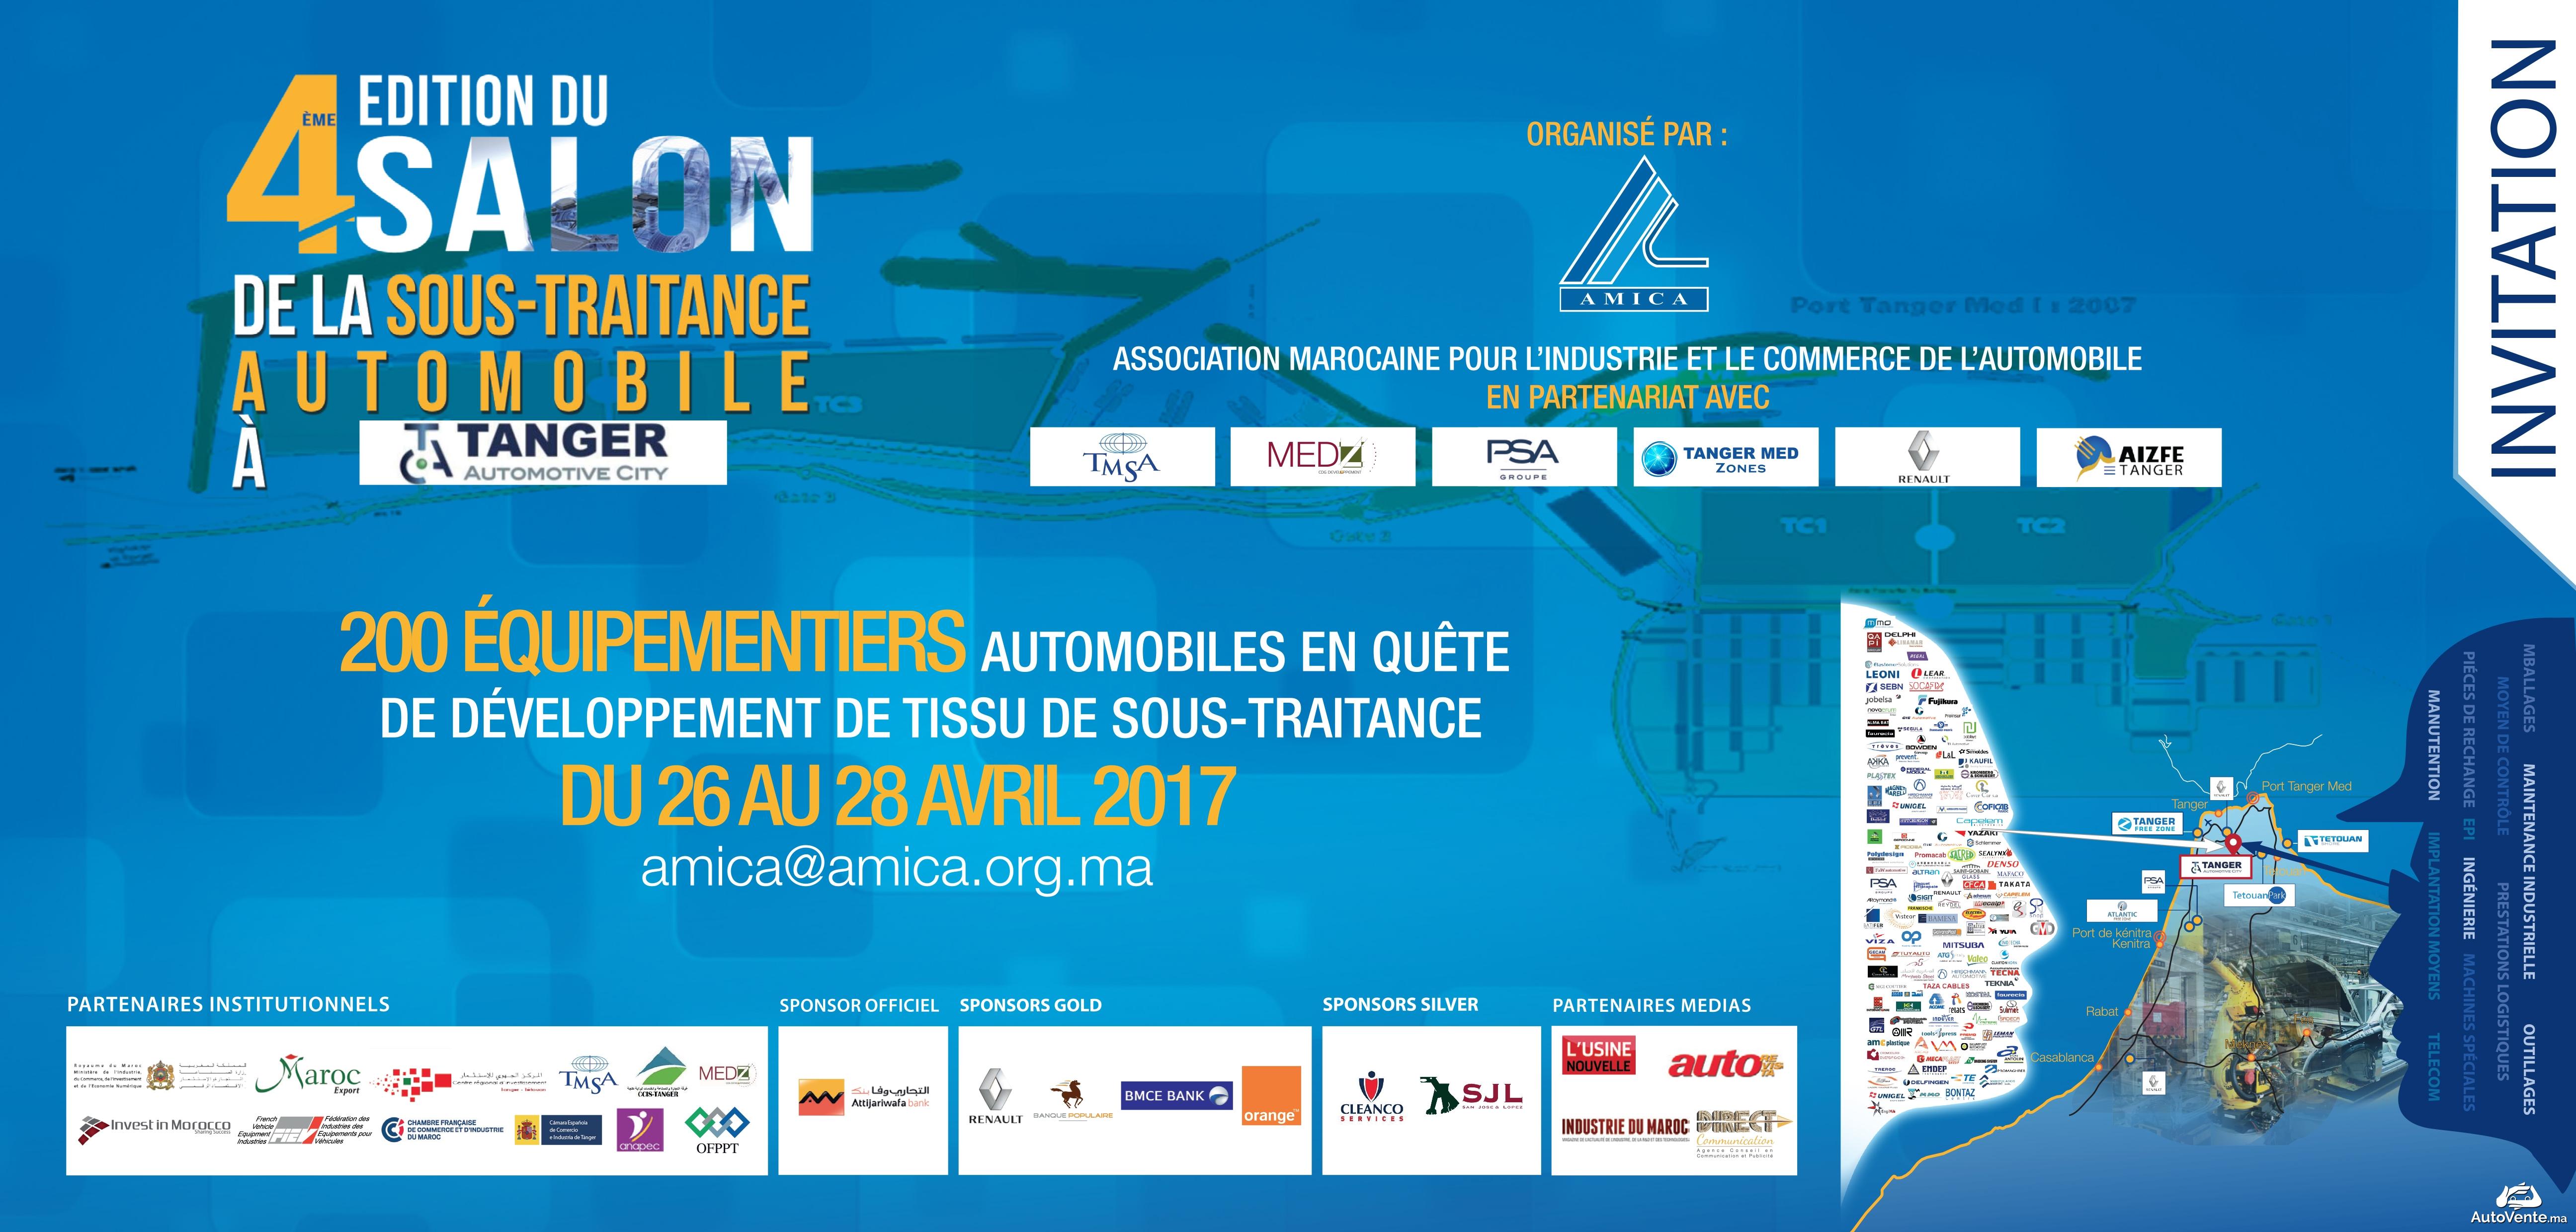 Le secteur marocain de l’automobile revoit ses ambitions à la hausse 